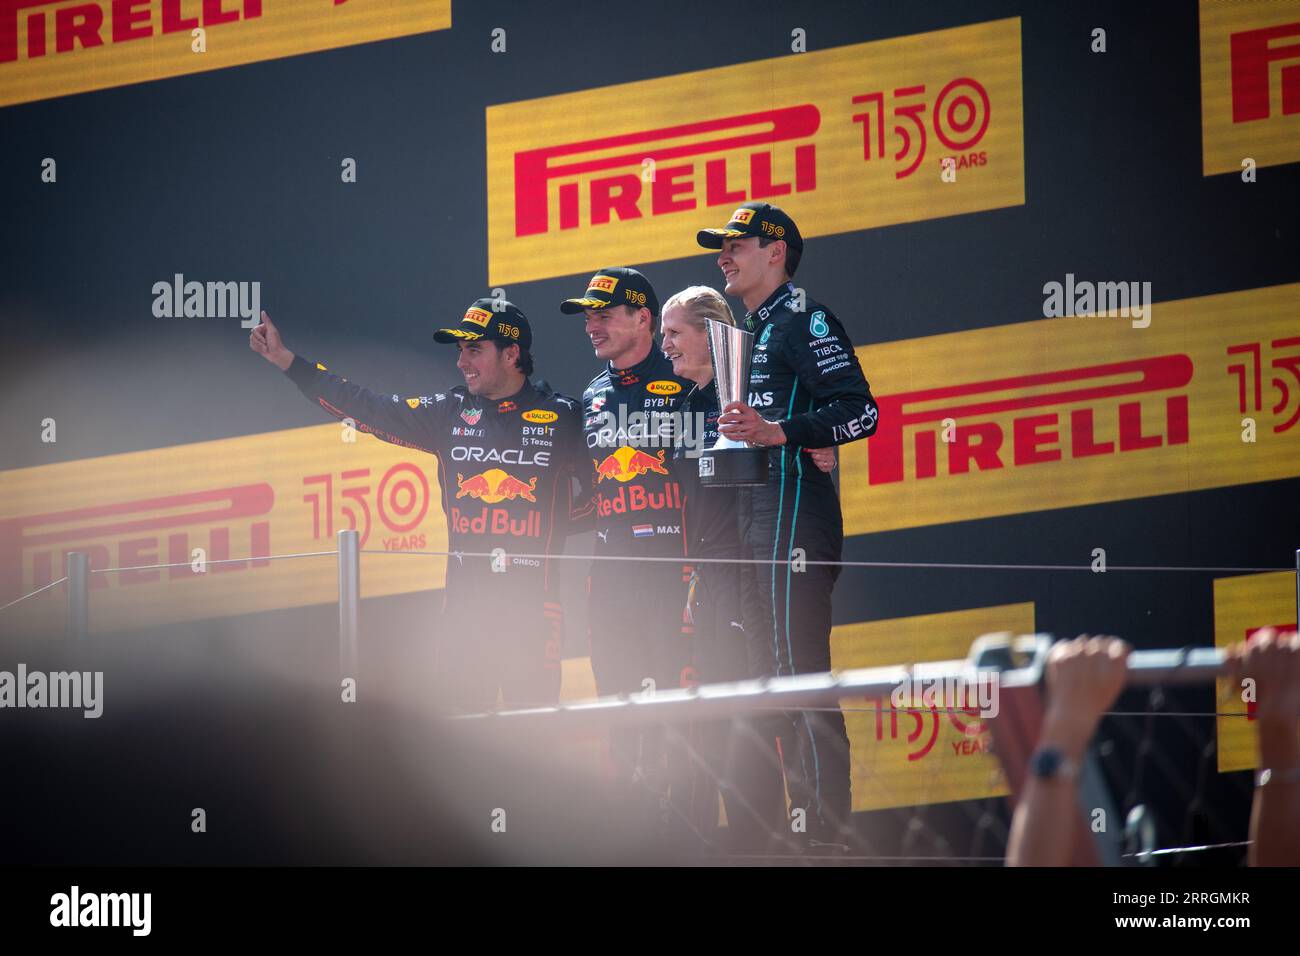 George Russell, Max Verstappen und Sergio Perez stehen nach ihren Siegen beim Großen Preis von Spanien auf dem Podium. Stockfoto